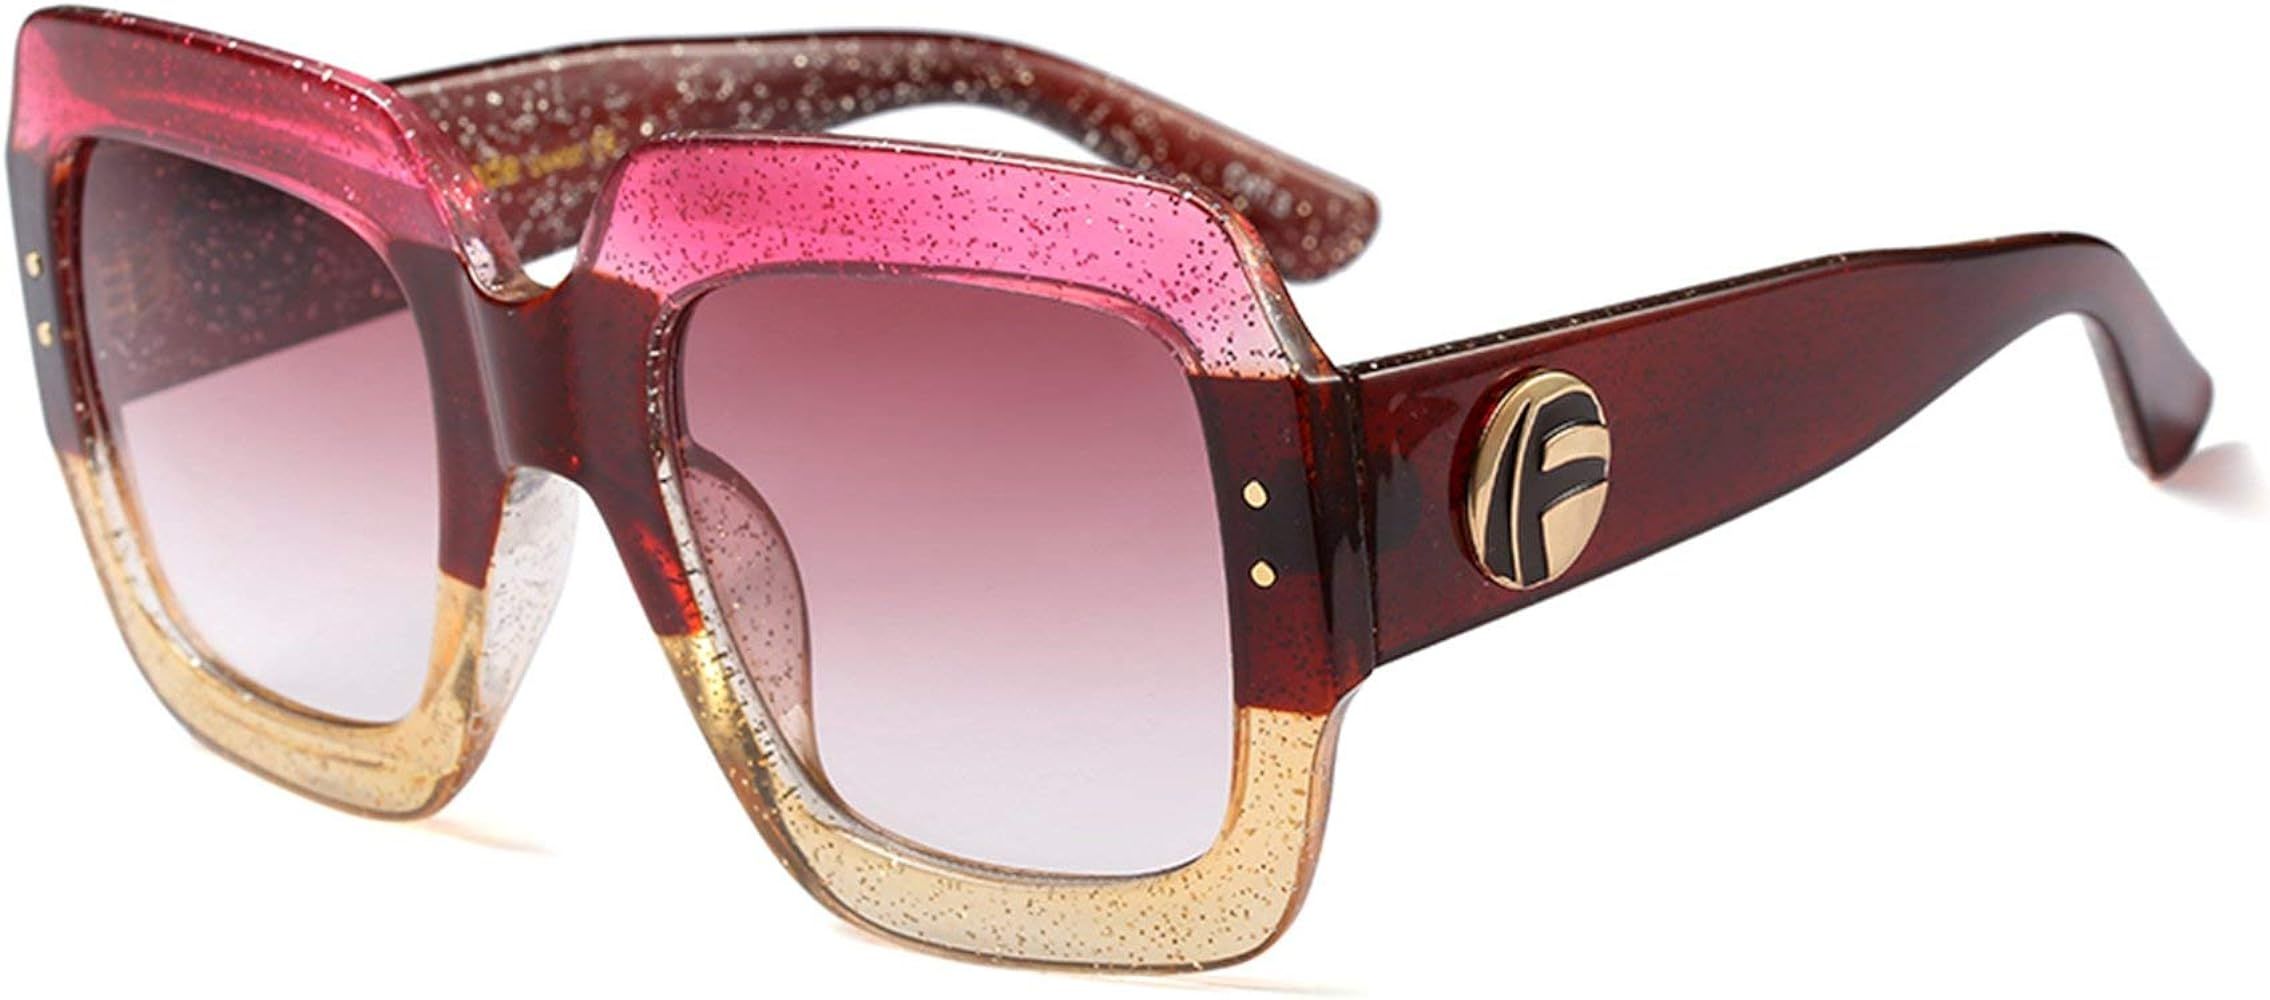 Oversized Square Sunglasses Multi Tinted Glitter Frame Stylish Inspired B2276 | Amazon (US)